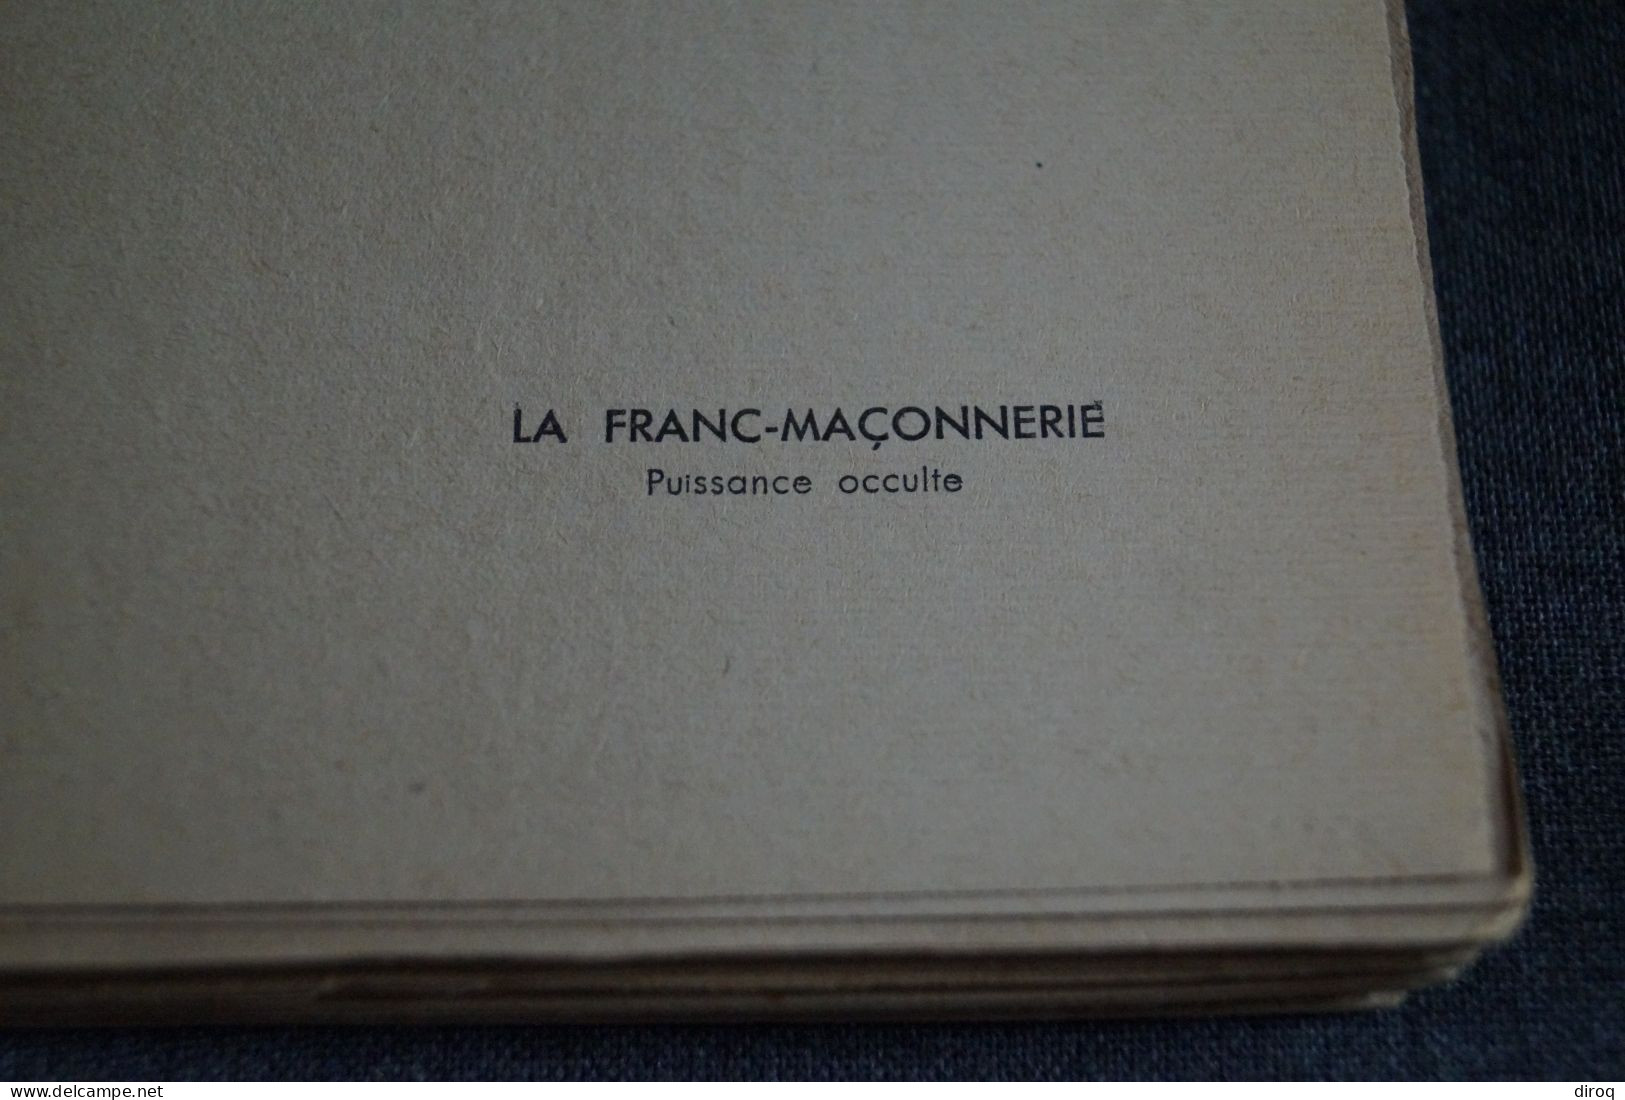 RARE Ouvrage De Franc-Maçonnerie 1932,Léon Poncin,Puissance Occulte,130 Pages,19 Cm./12 Cm. - Religion & Esotérisme